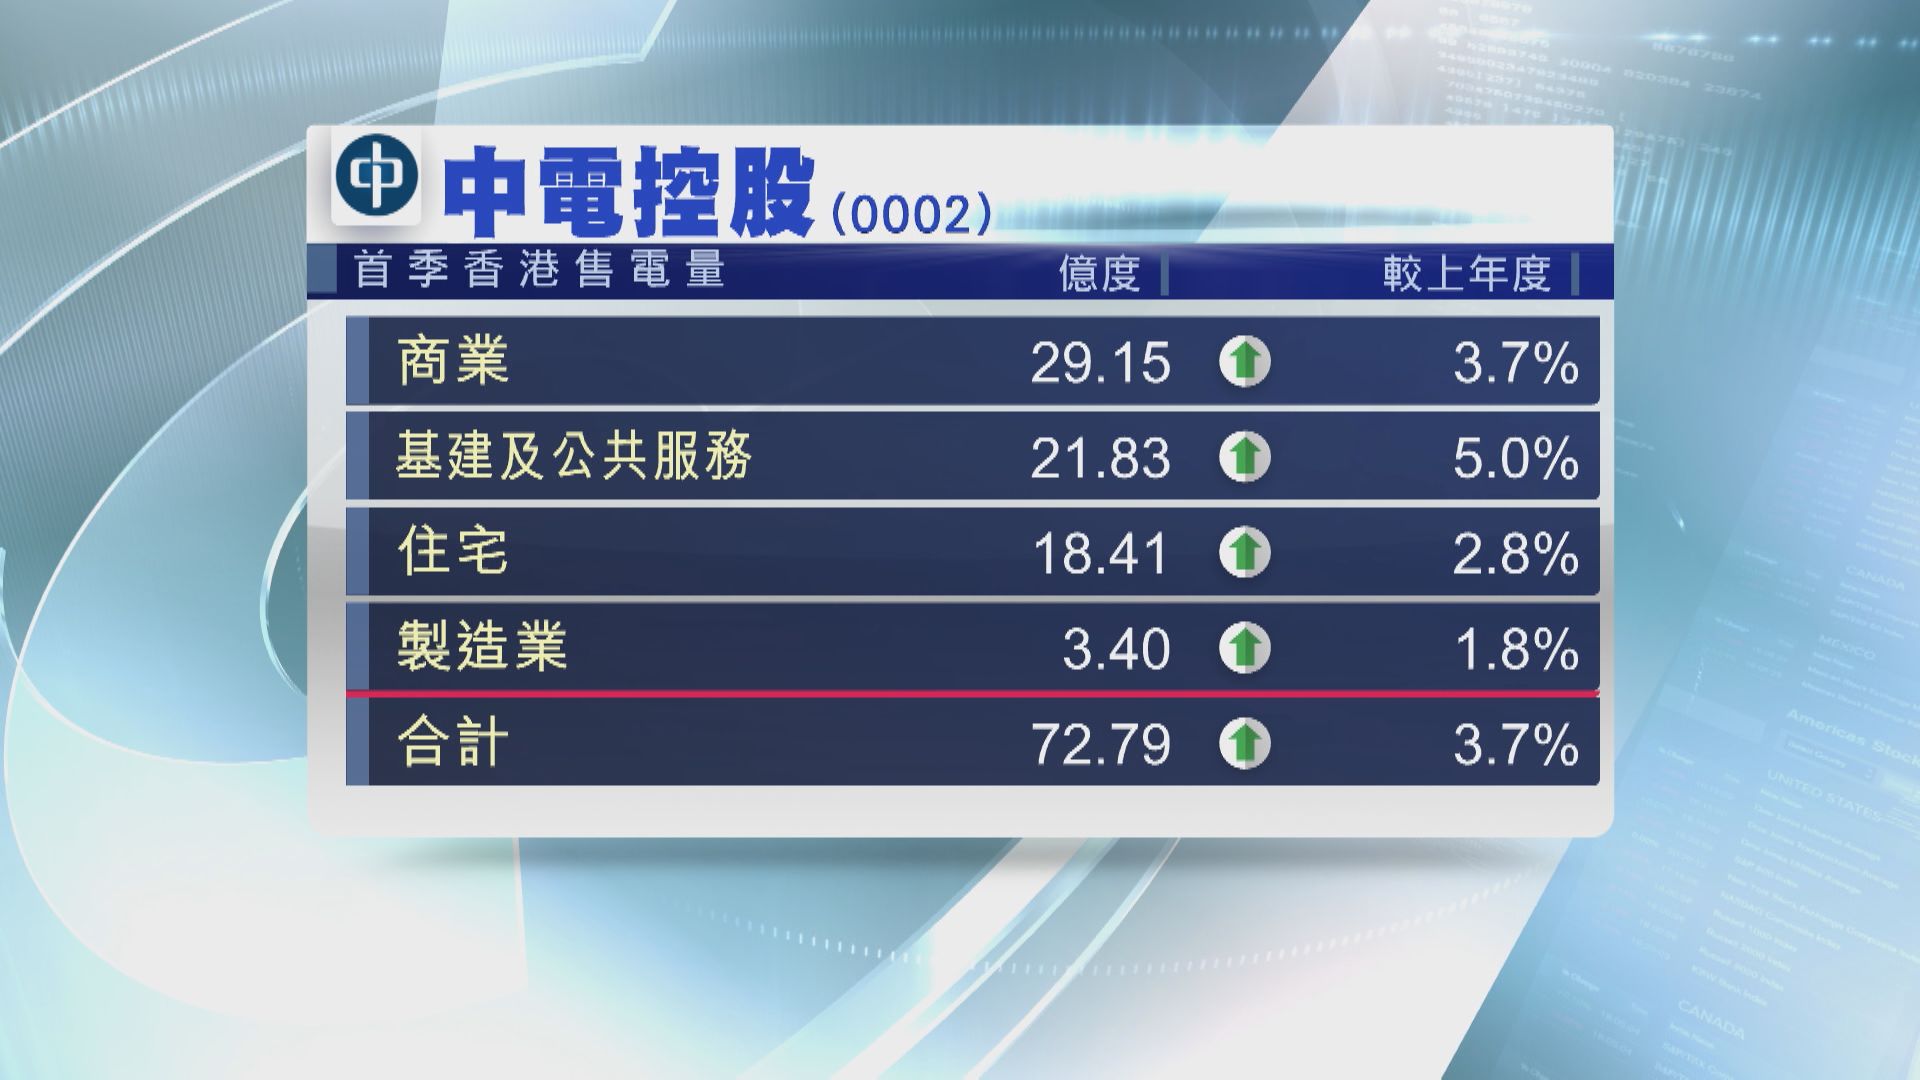 【小股東注意】中電派第1期中期息0.63元 港首季售電量升3.7%